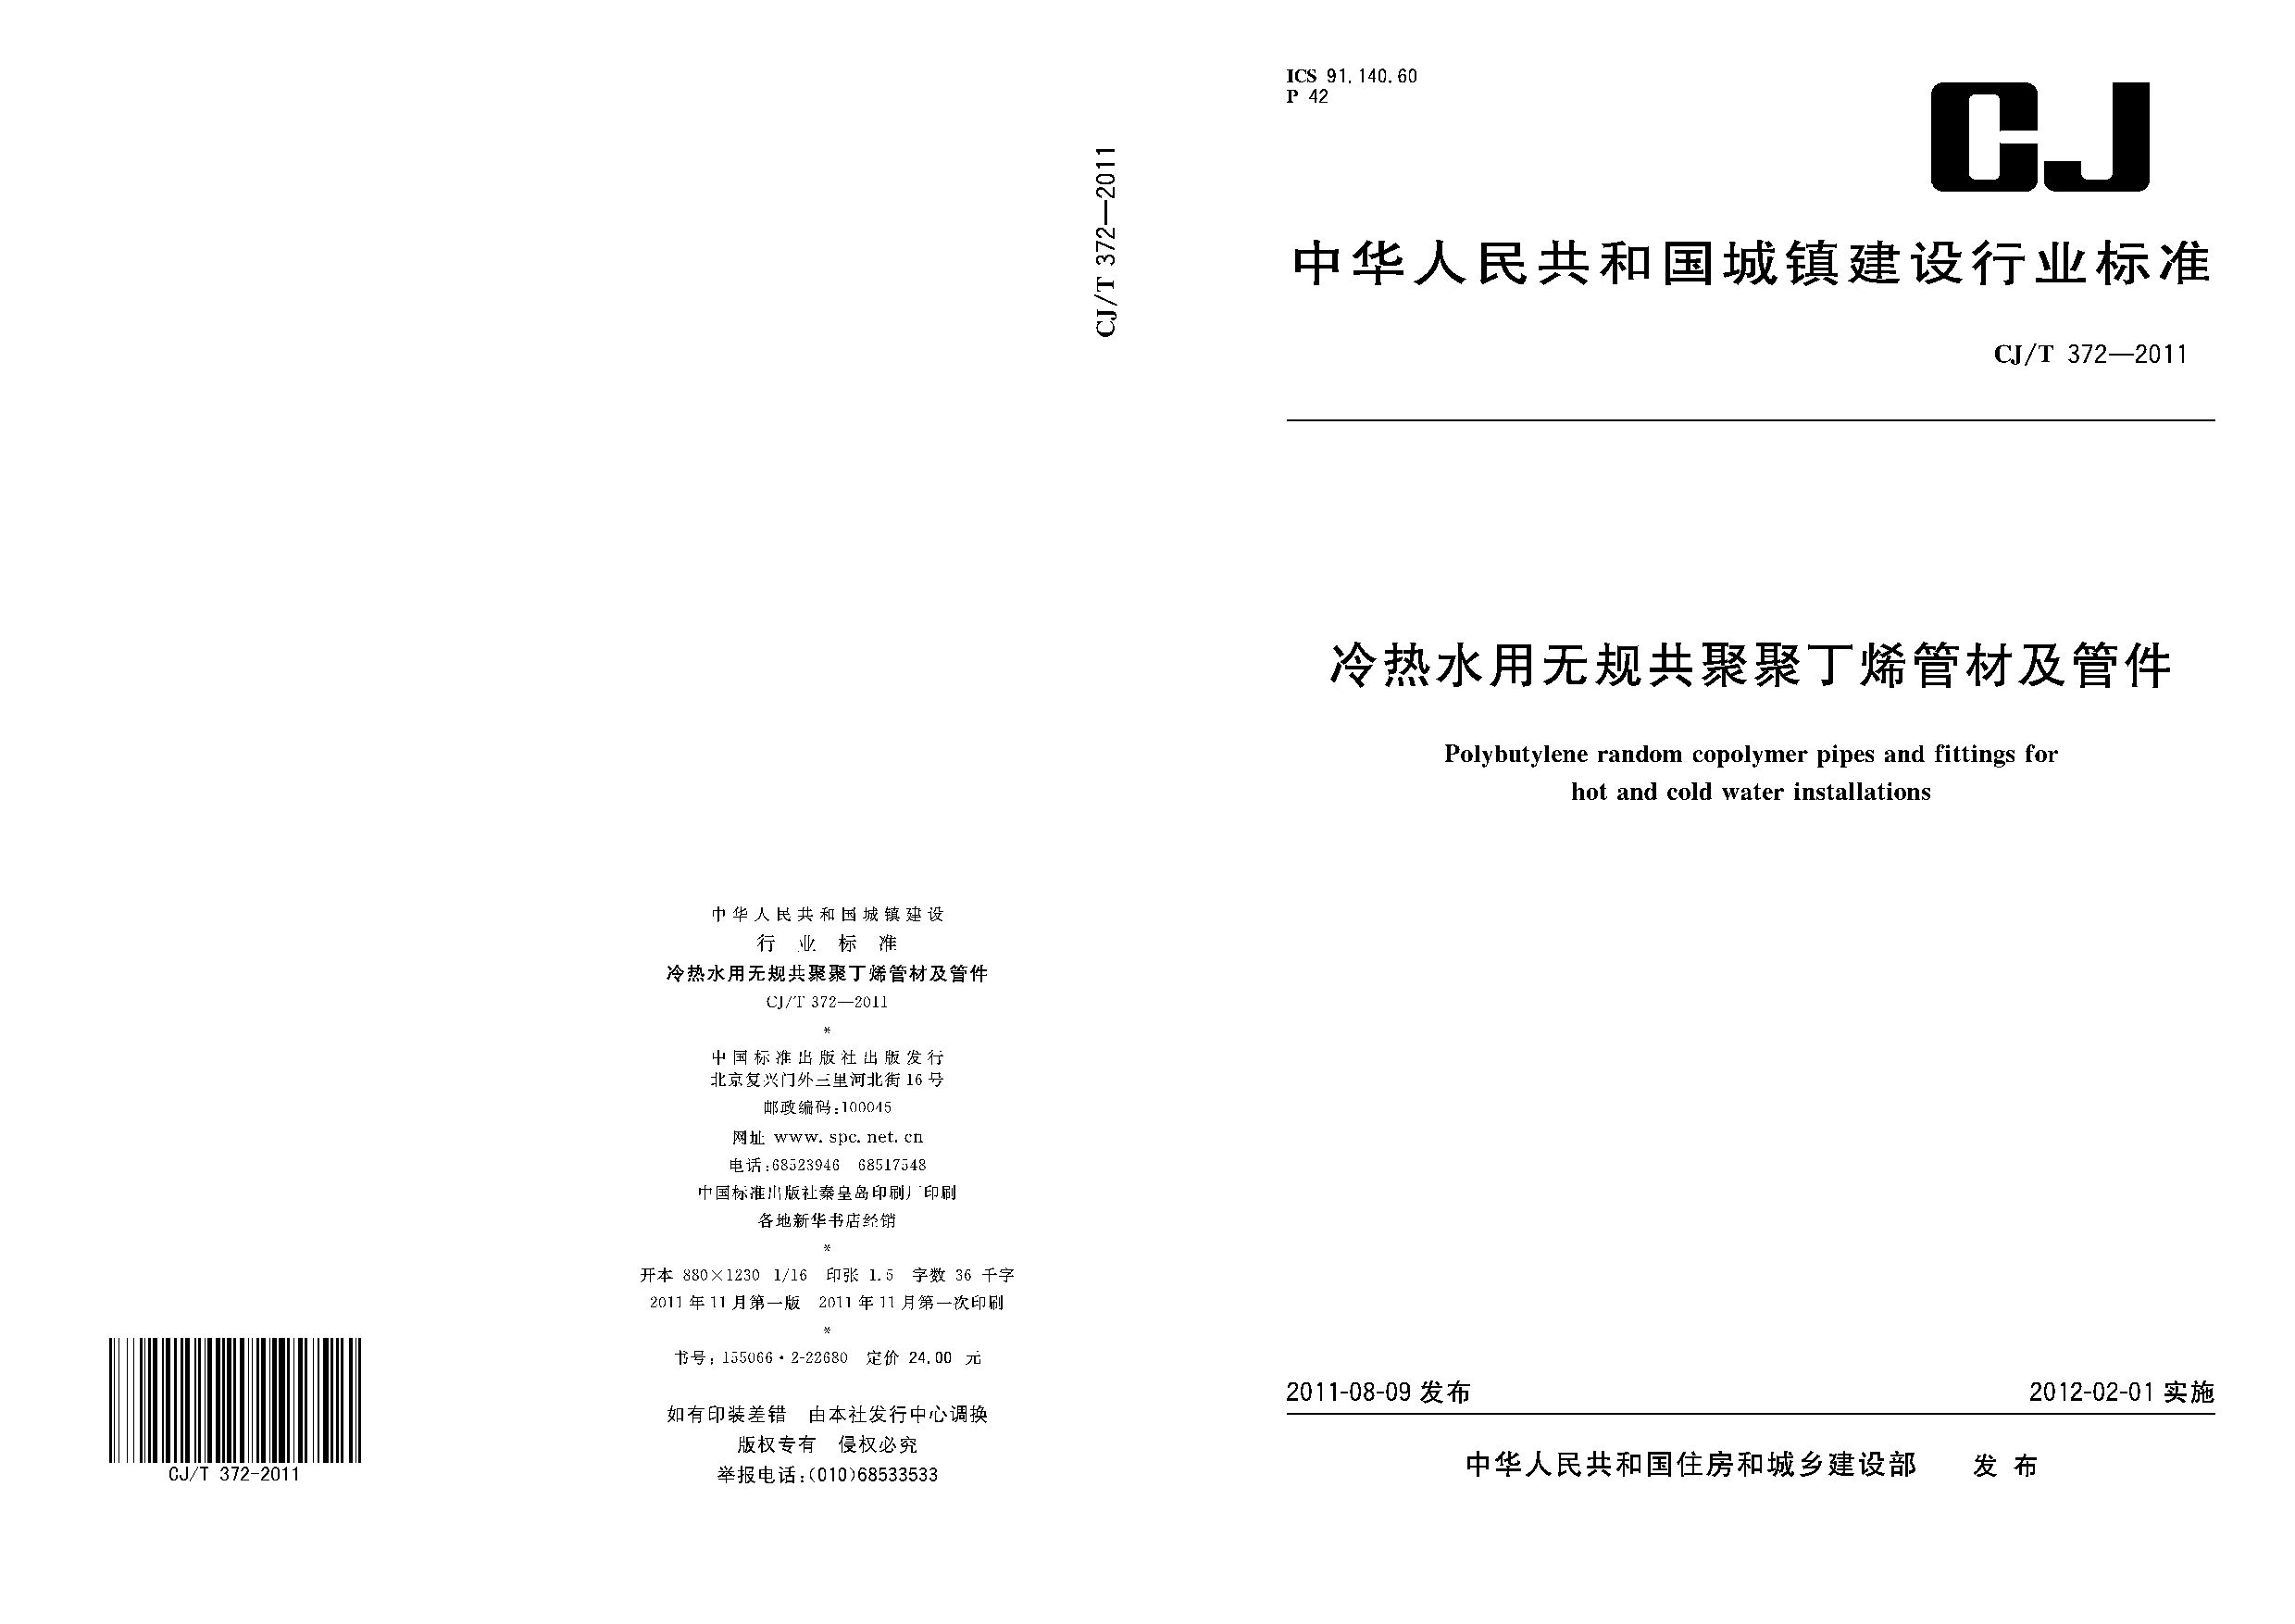 CJ/T 372-2011封面图